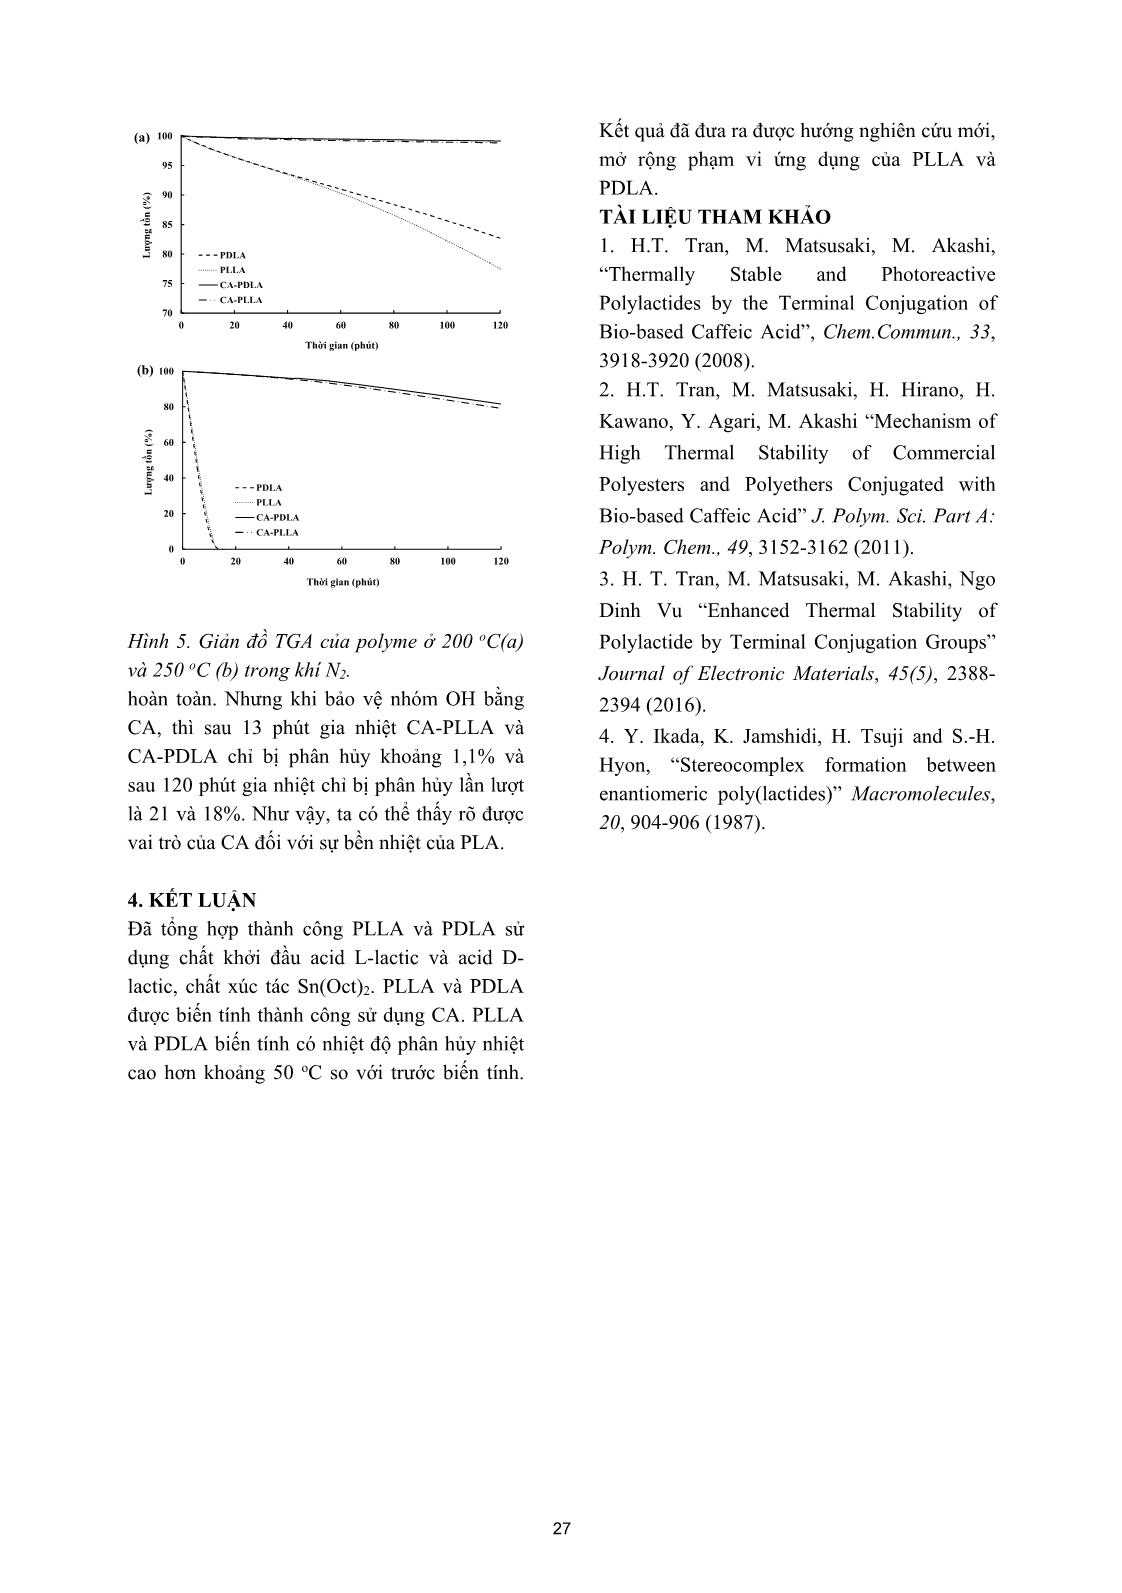 Nâng cao độ bền nhiệt của polylactide bằng phương pháp biến tính với acid cinnamic trang 5